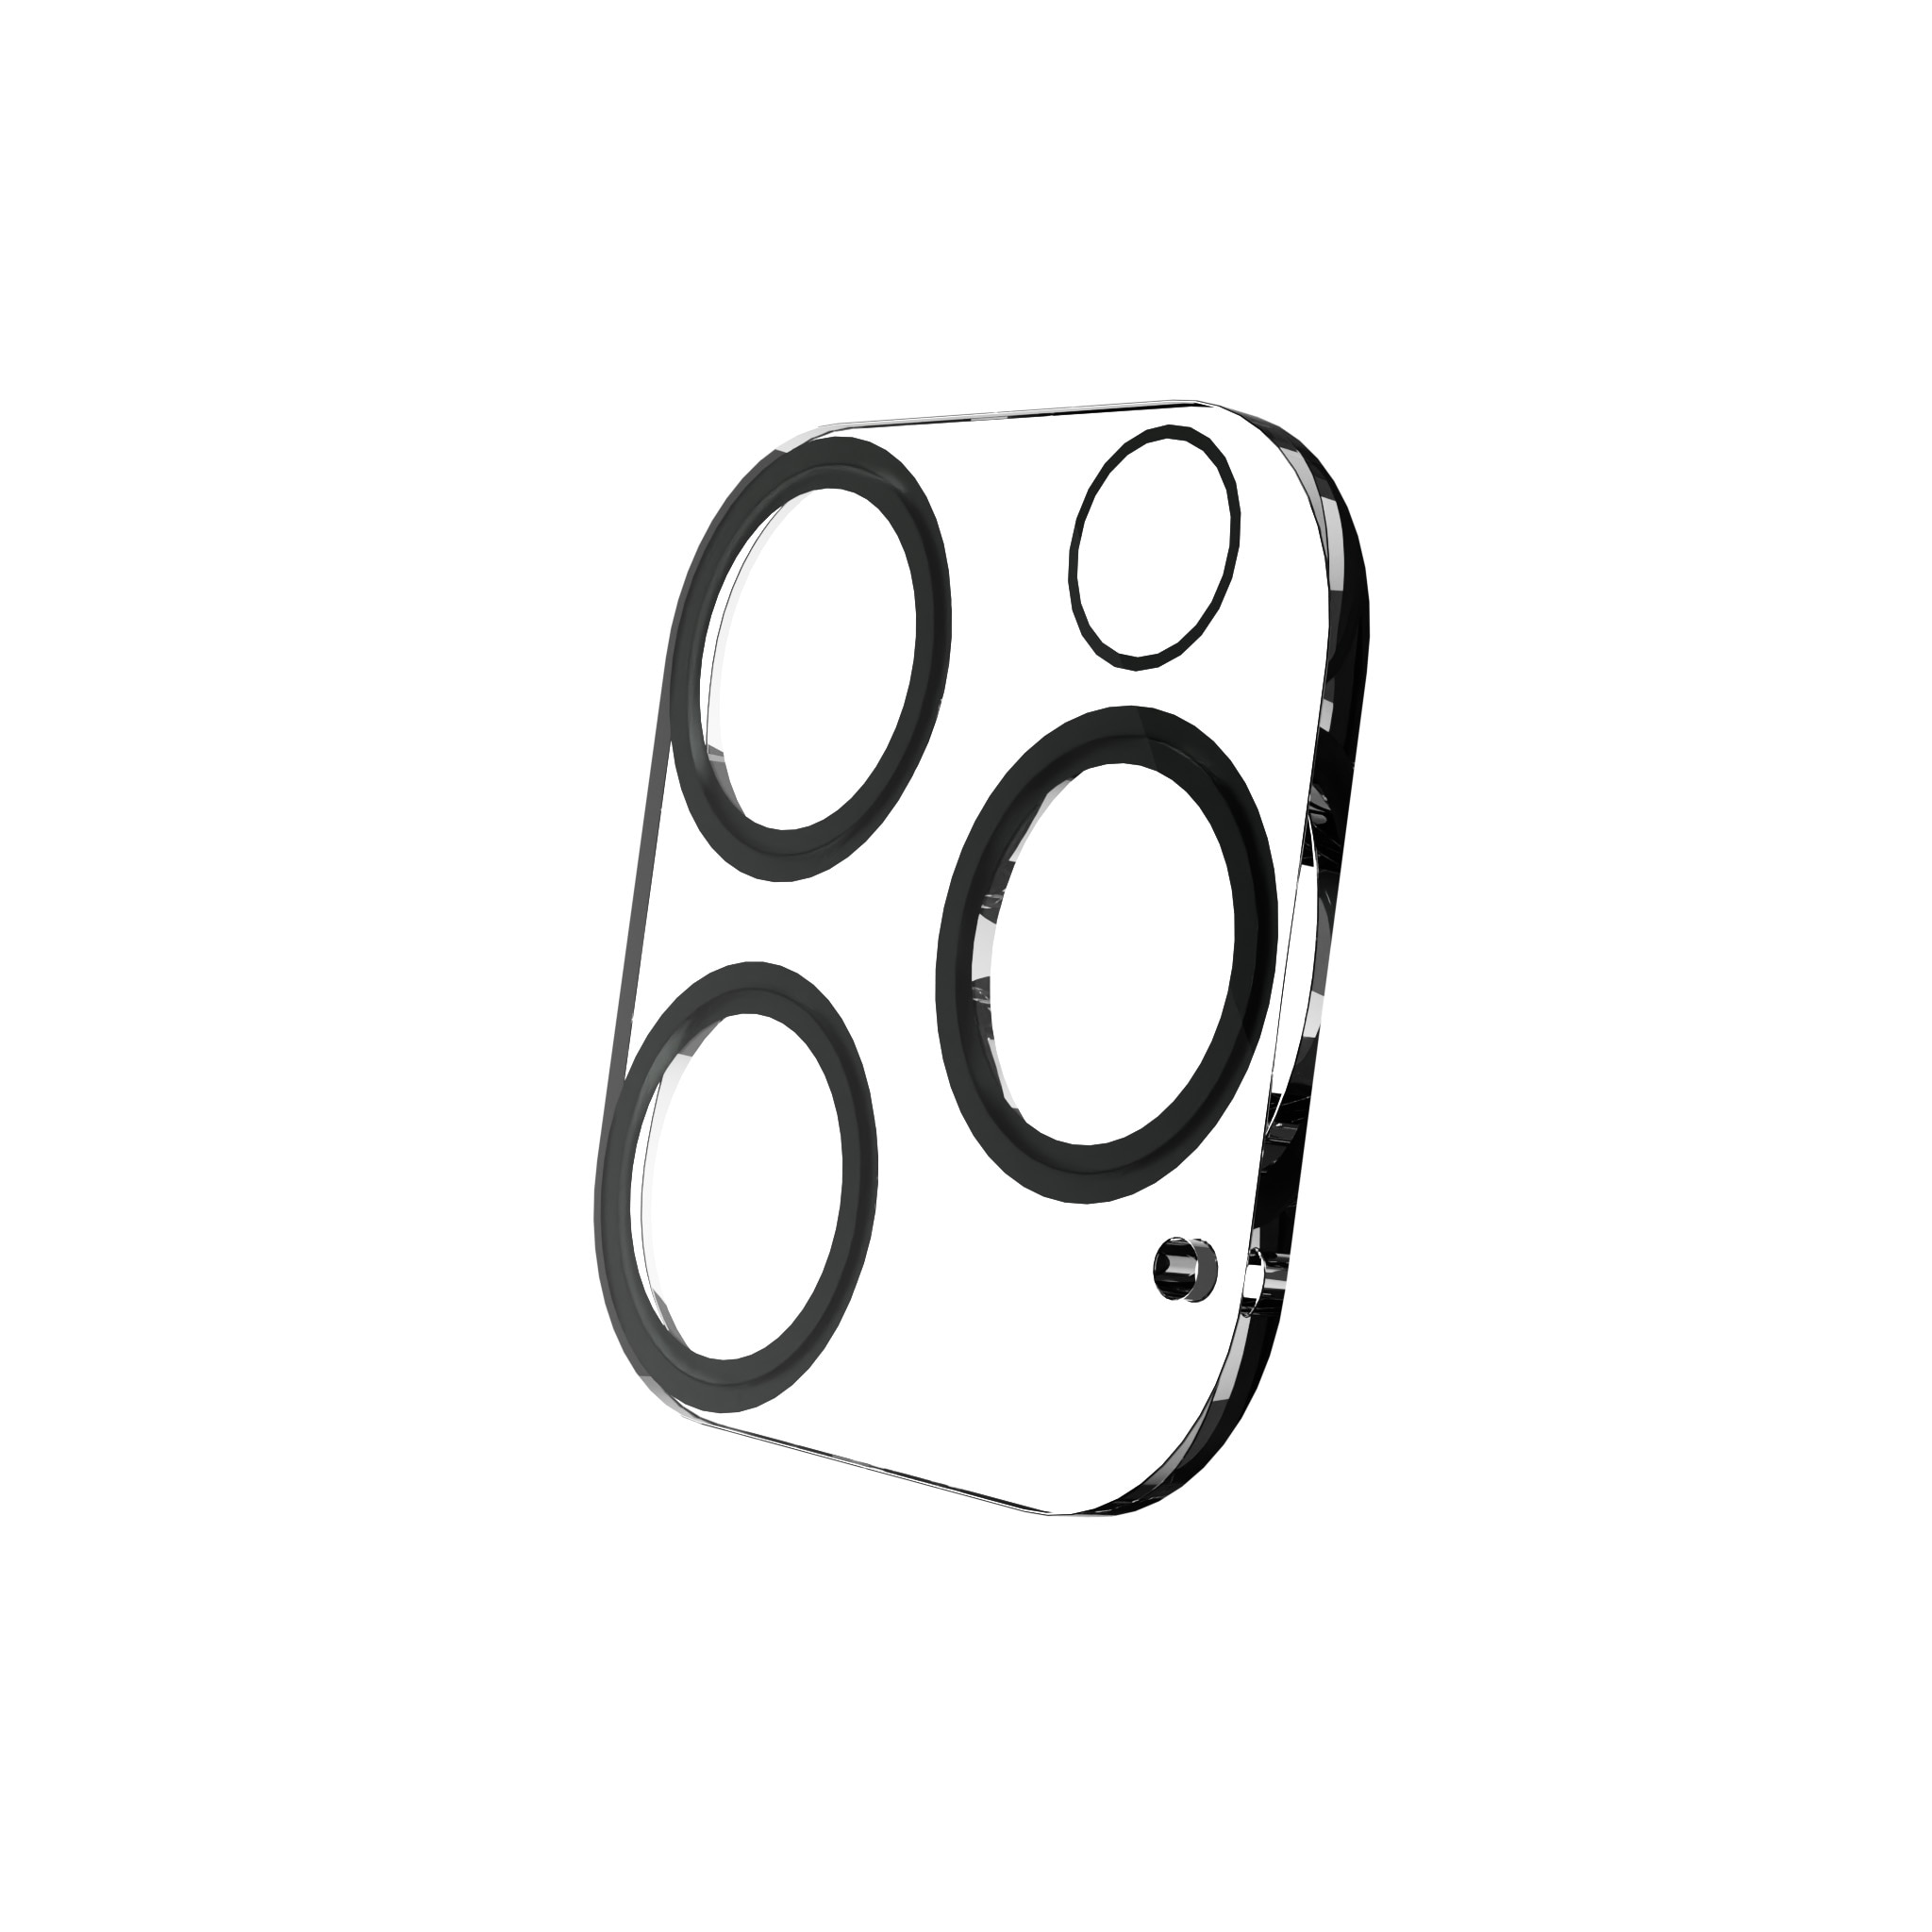 Cubre objetivo de cristal templado Exoglass iPhone 13 Pro Max